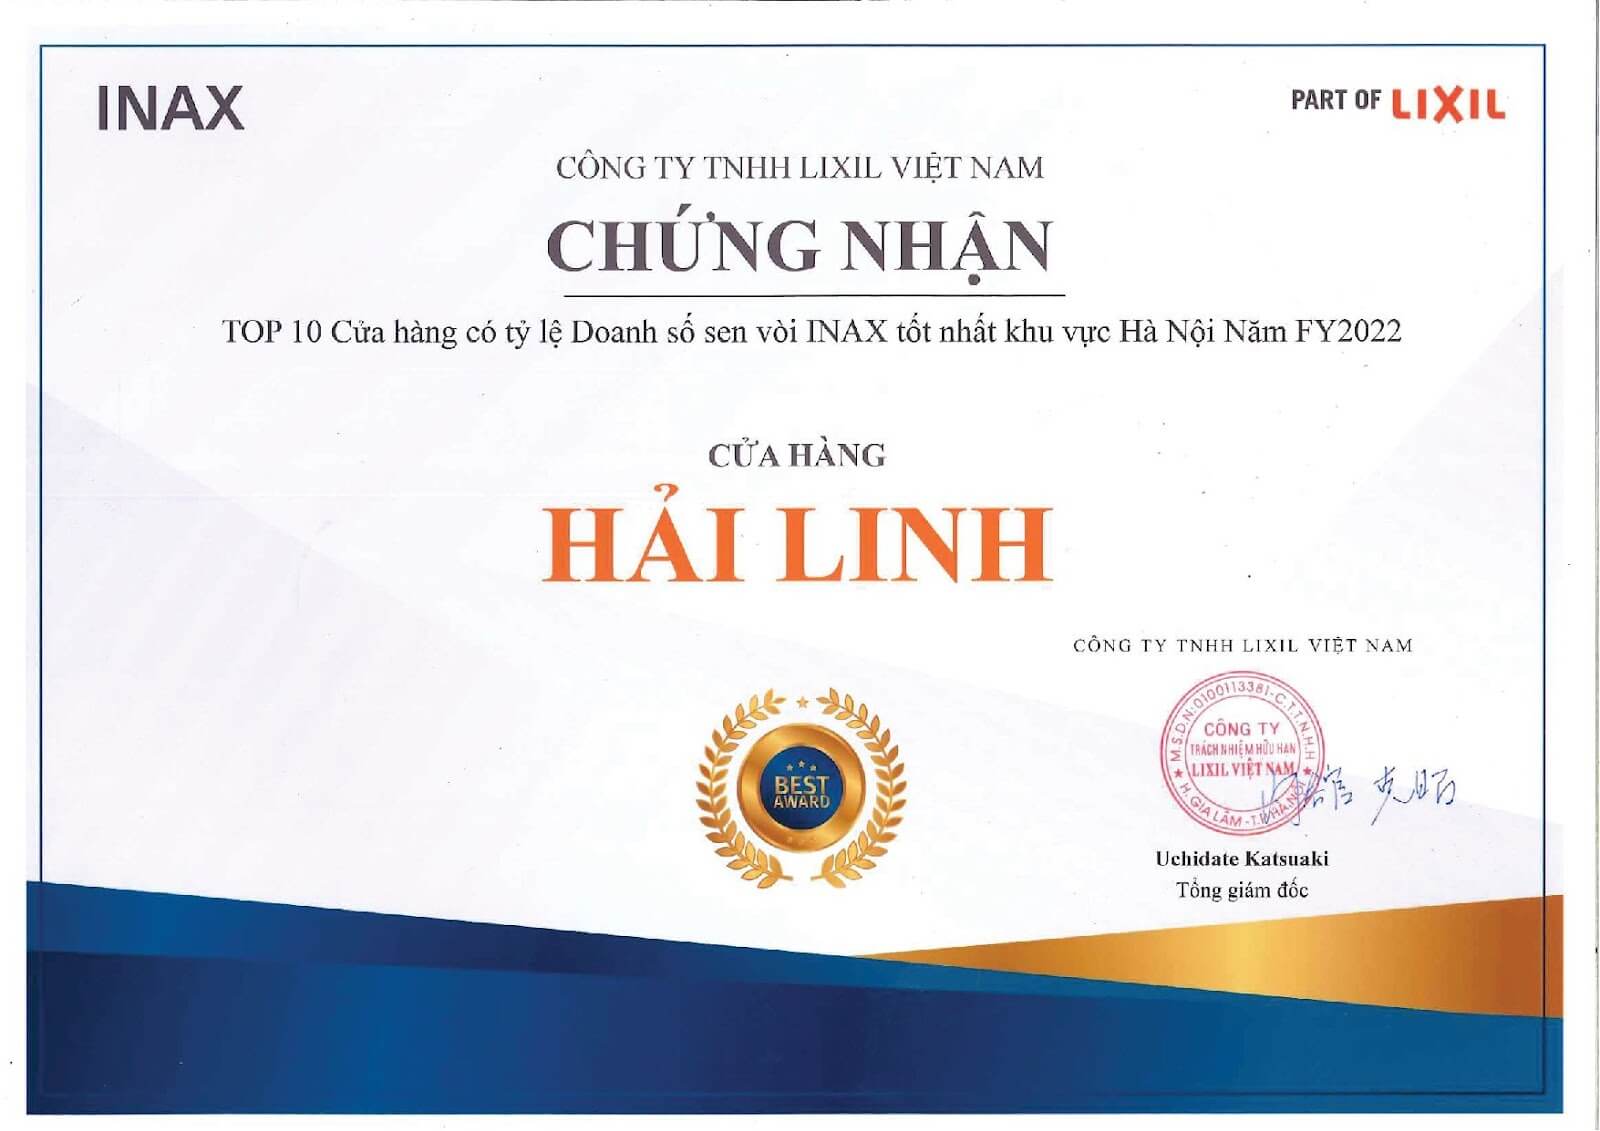 Hải Linh vinh dự đạt chứng nhận top cửa hàng doanh số INAX cao nhất Hà Nội năm 2022 